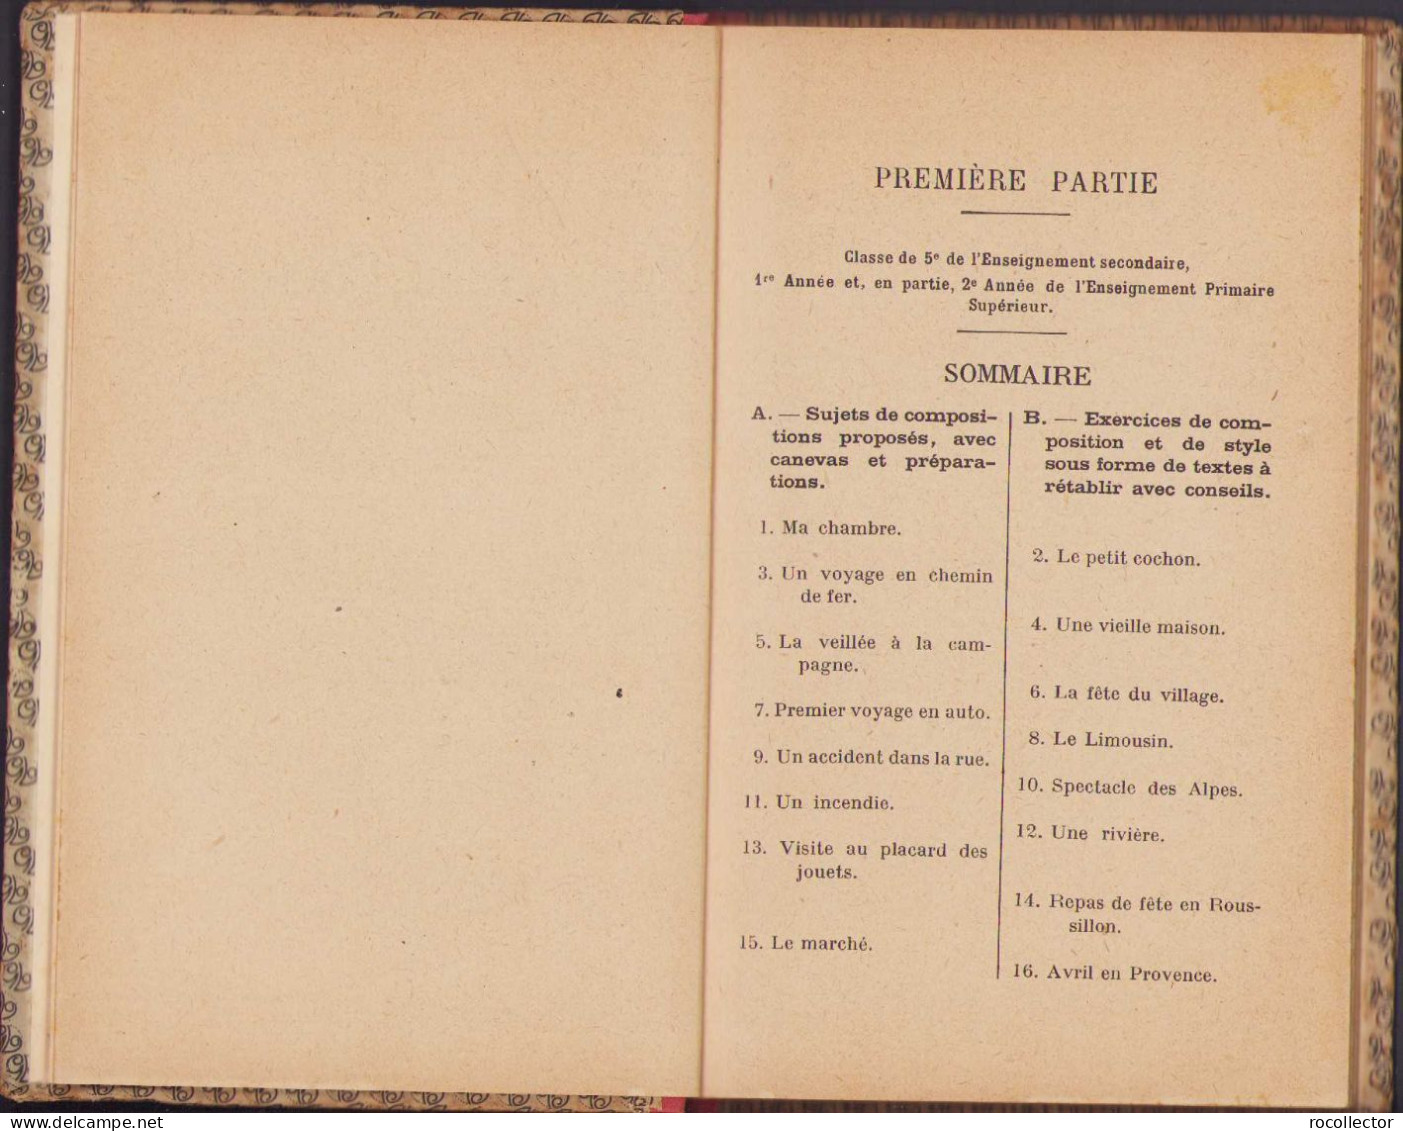 Methode De Composition Francaise Livre De L’Eleve, 1926 C315 - Alte Bücher